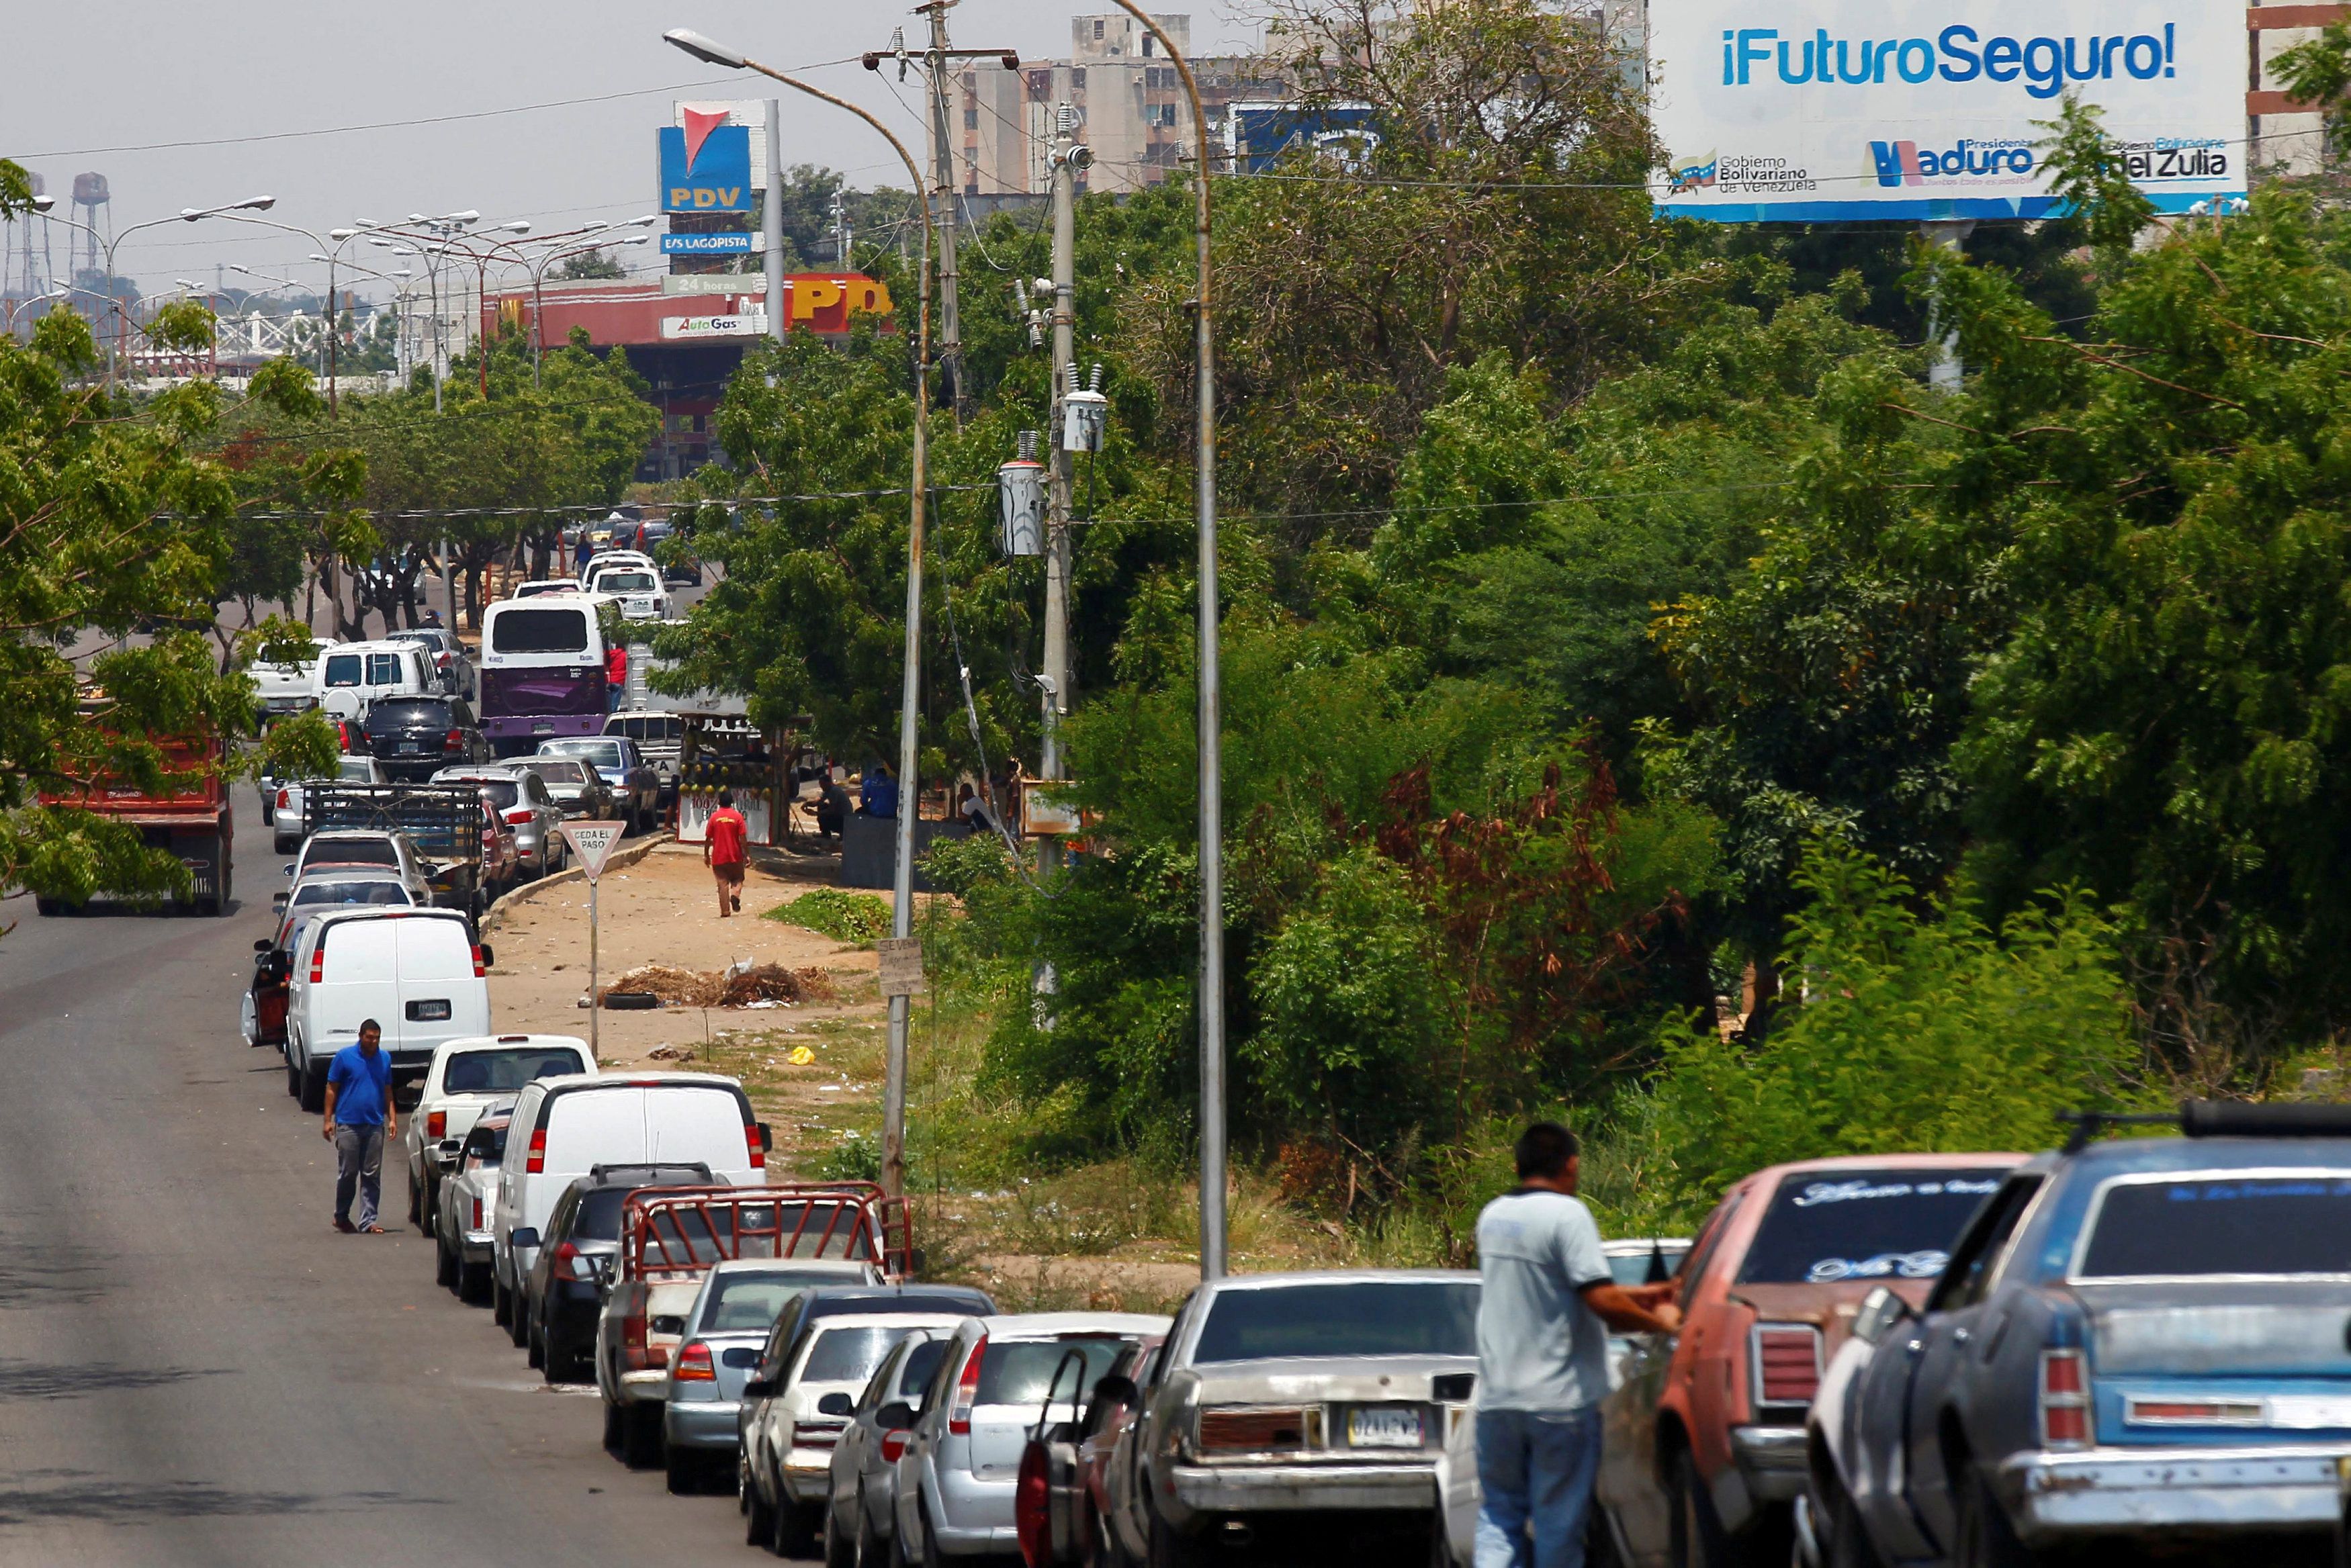 Cese de concesiones de gasolineras afectará la calidad del servicio en Venezuela, según analistas